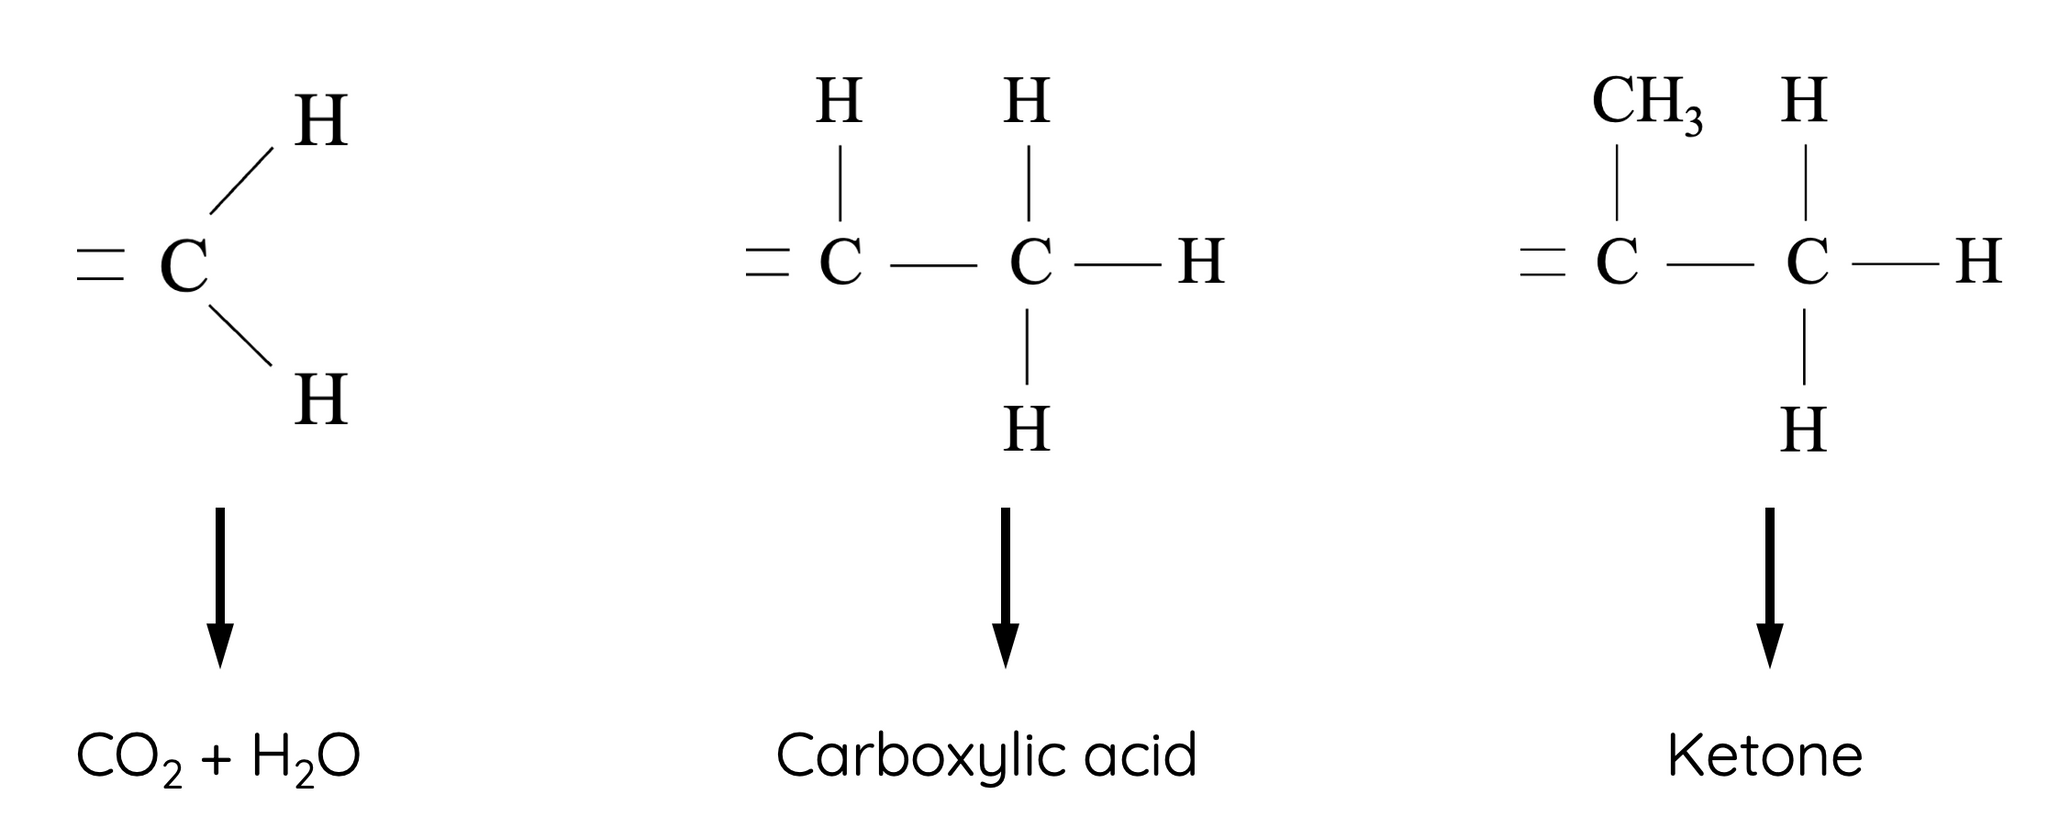 Oxidation of alkenes